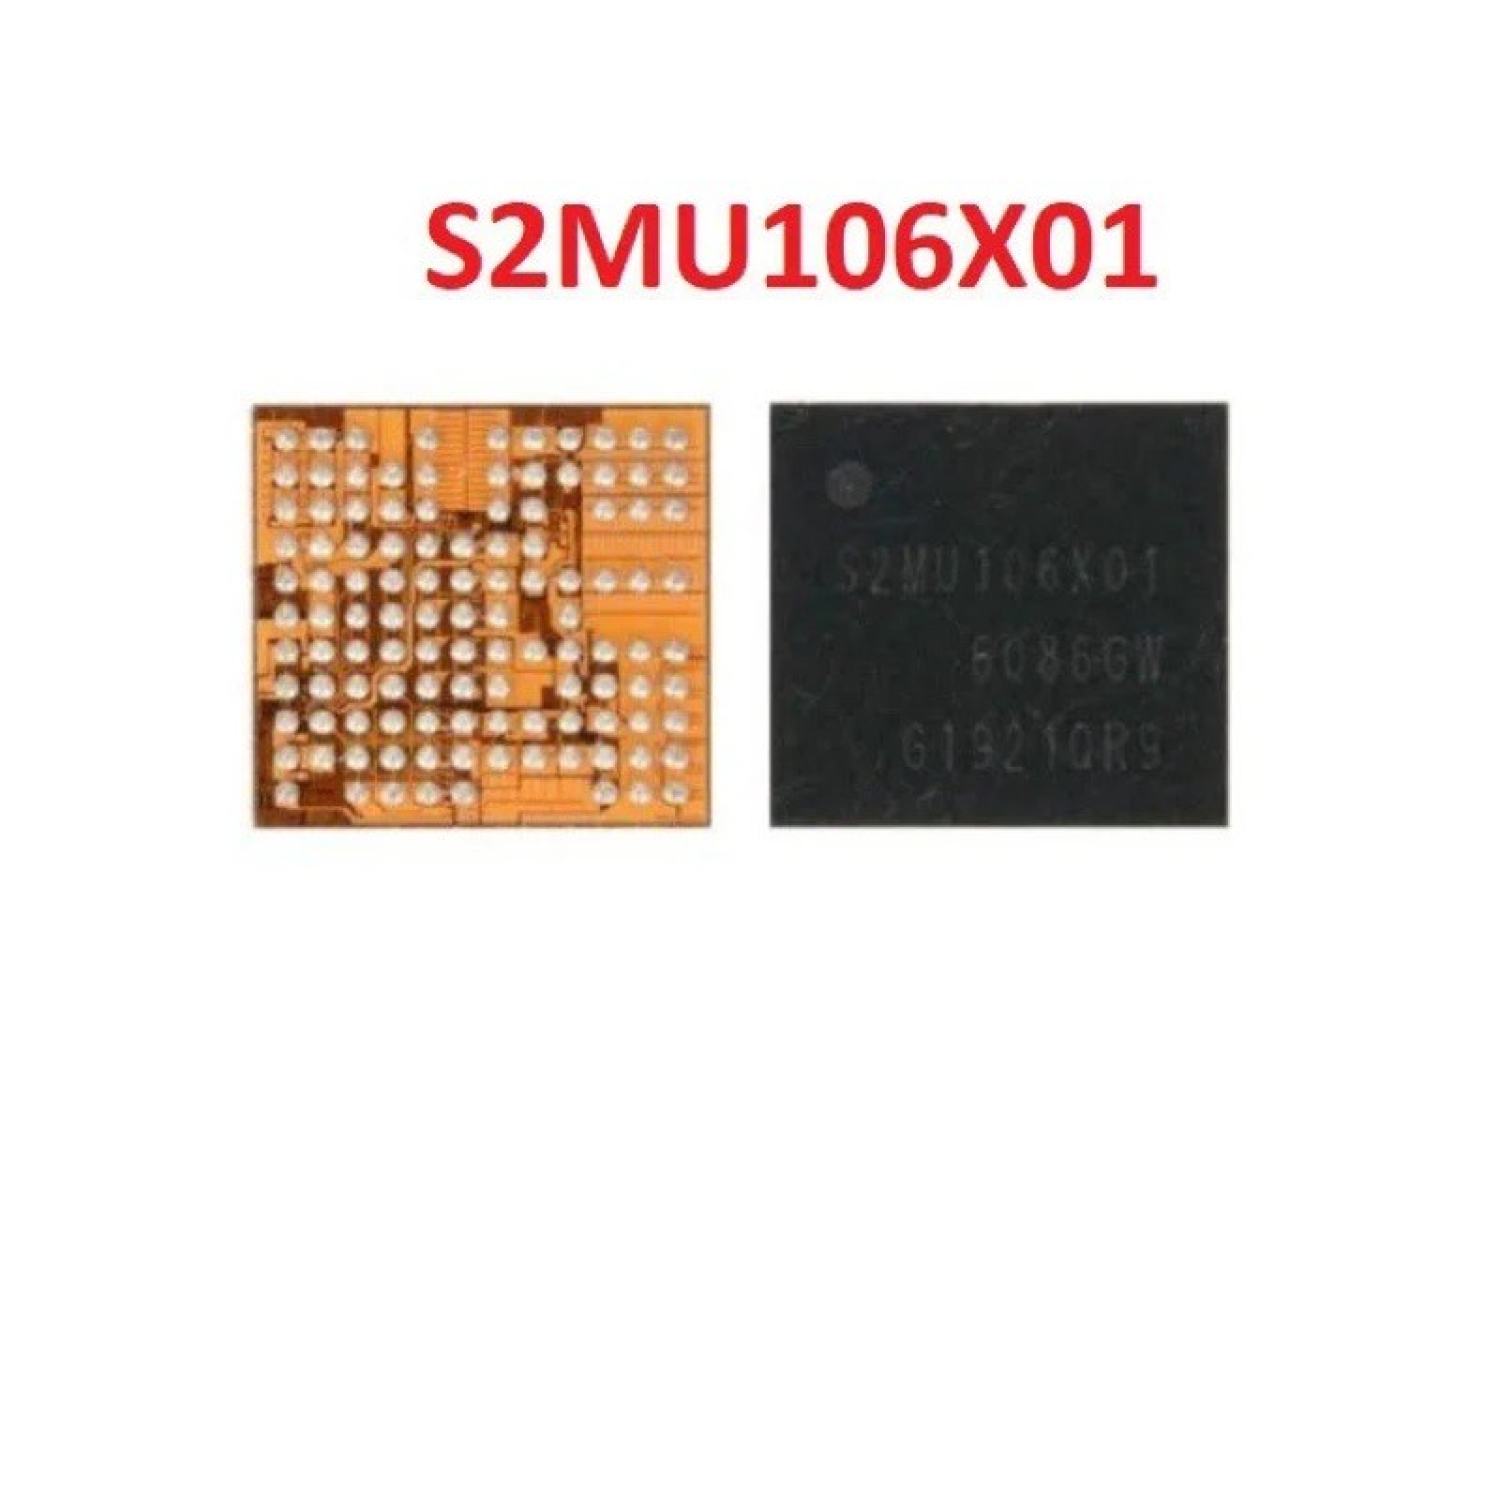 S2MU106X01 IC Nguồn nhỏ Samsung A30 - A50 - A50s vv…vvv